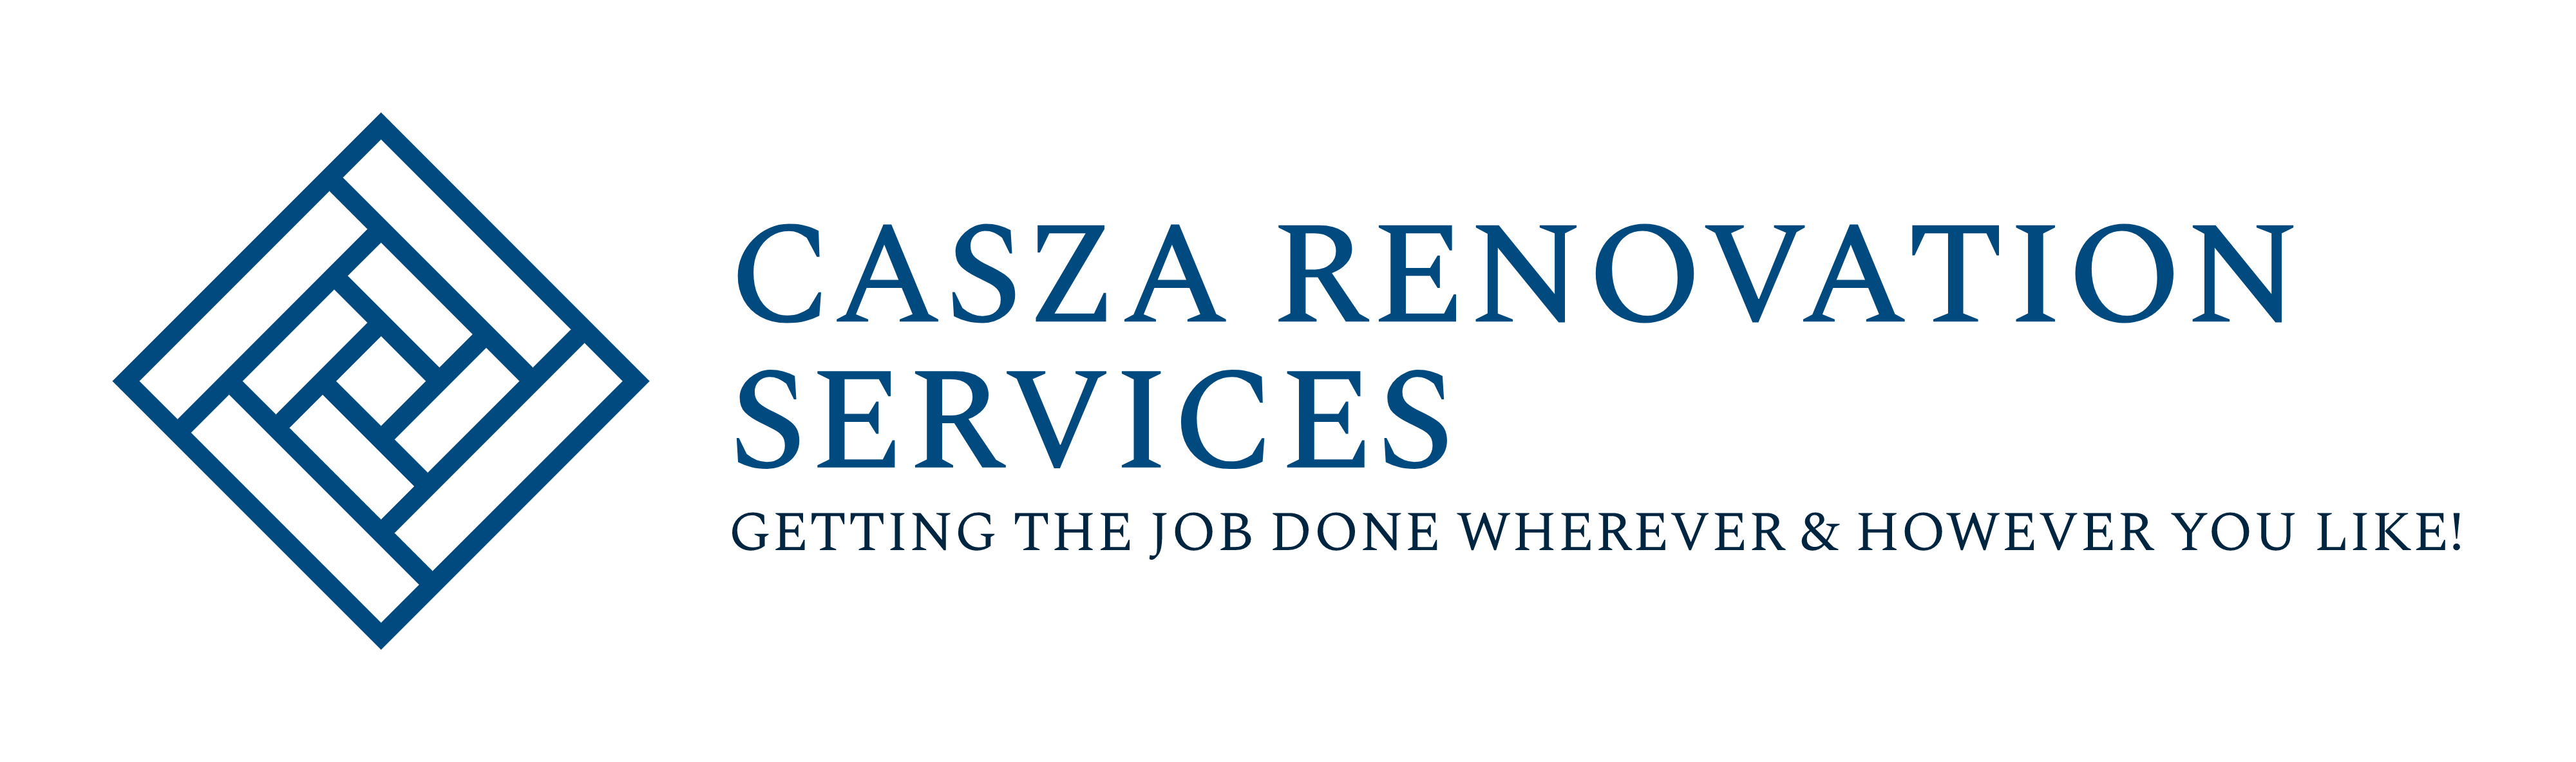 Casza Renovation Services LLC Logo